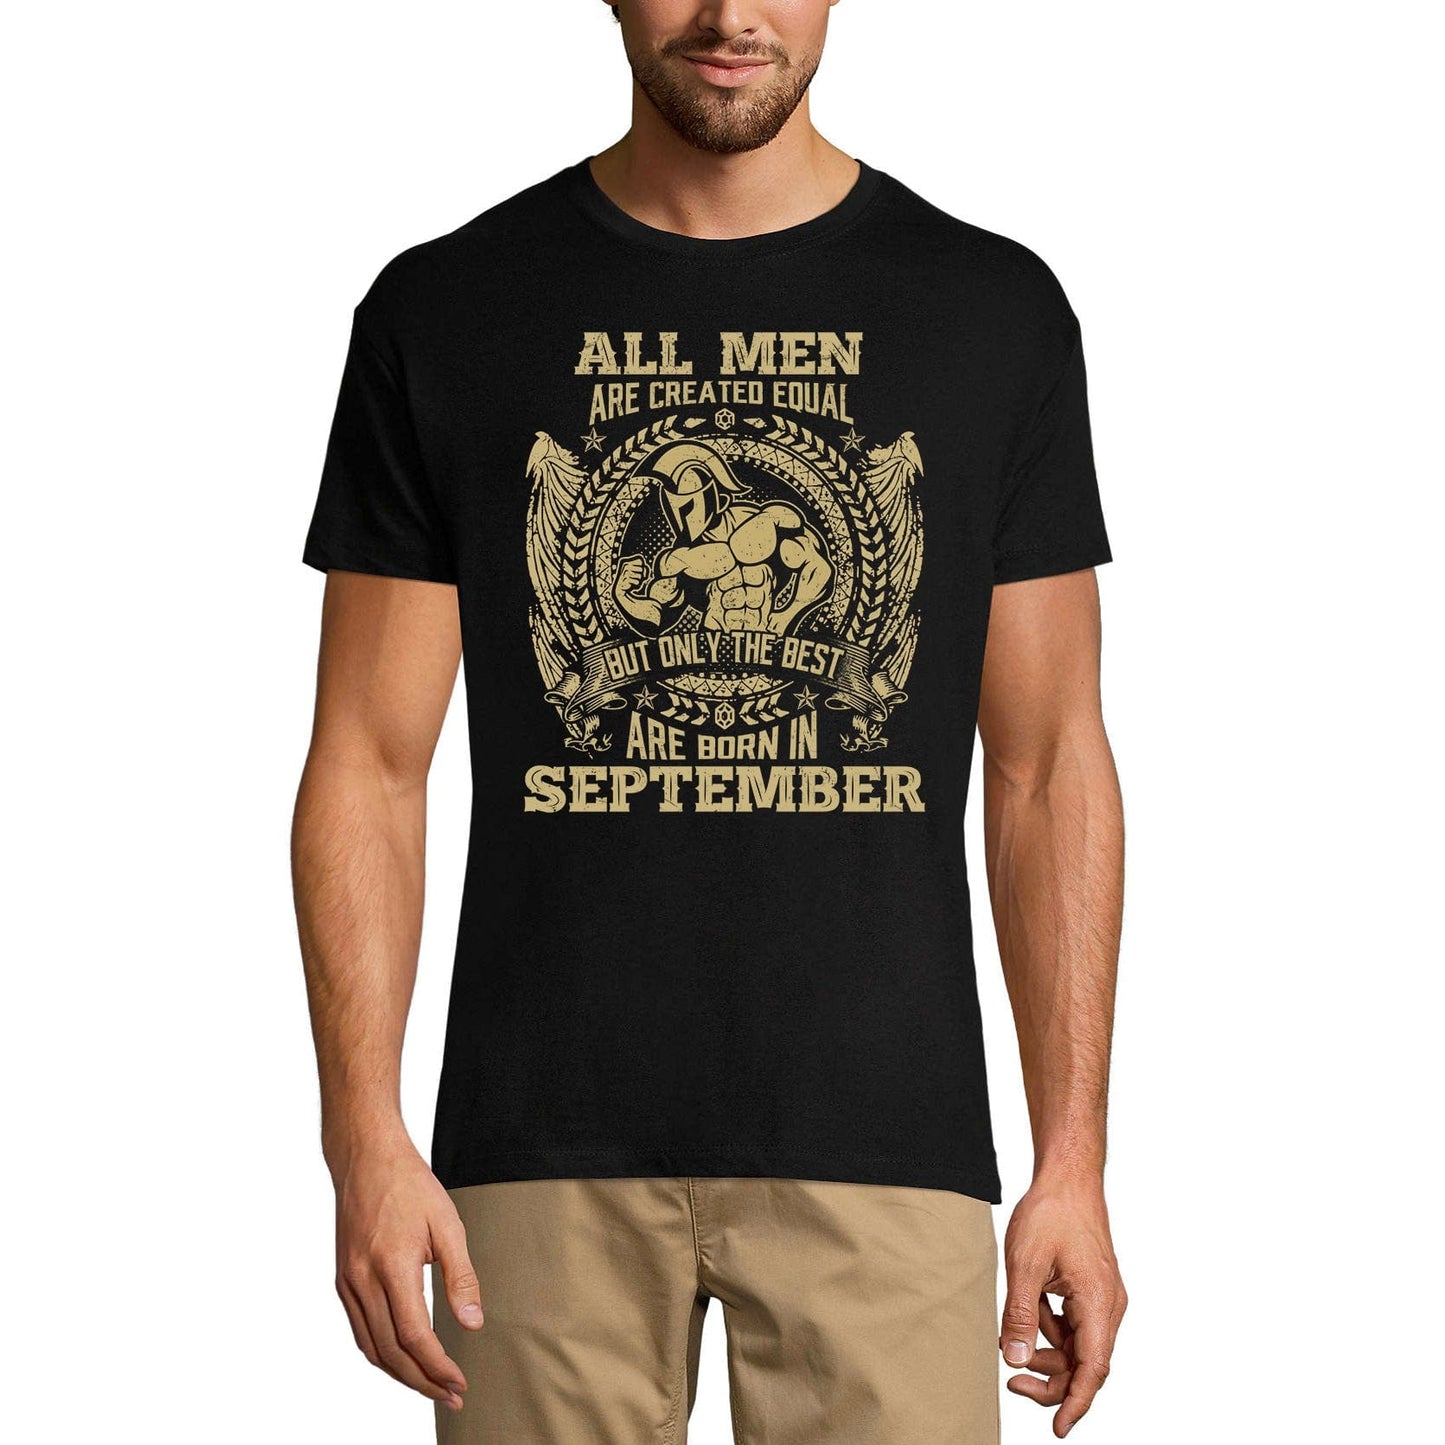 ULTRABASIC Men's Vintage T-Shirt Only the Best are Born in September - Birthday Gift Tee Shirt